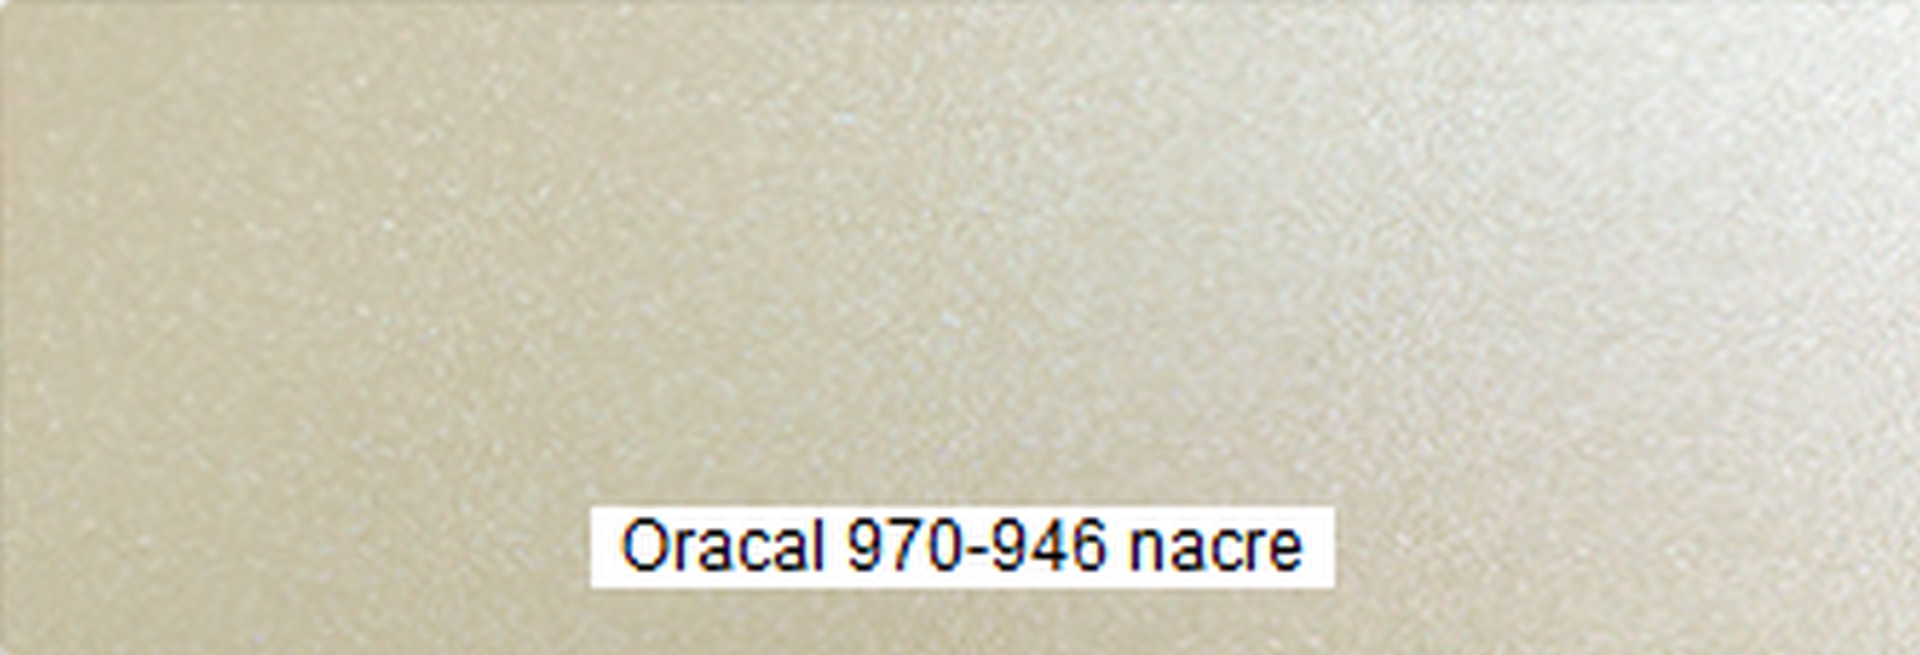 ORCAL 970-946